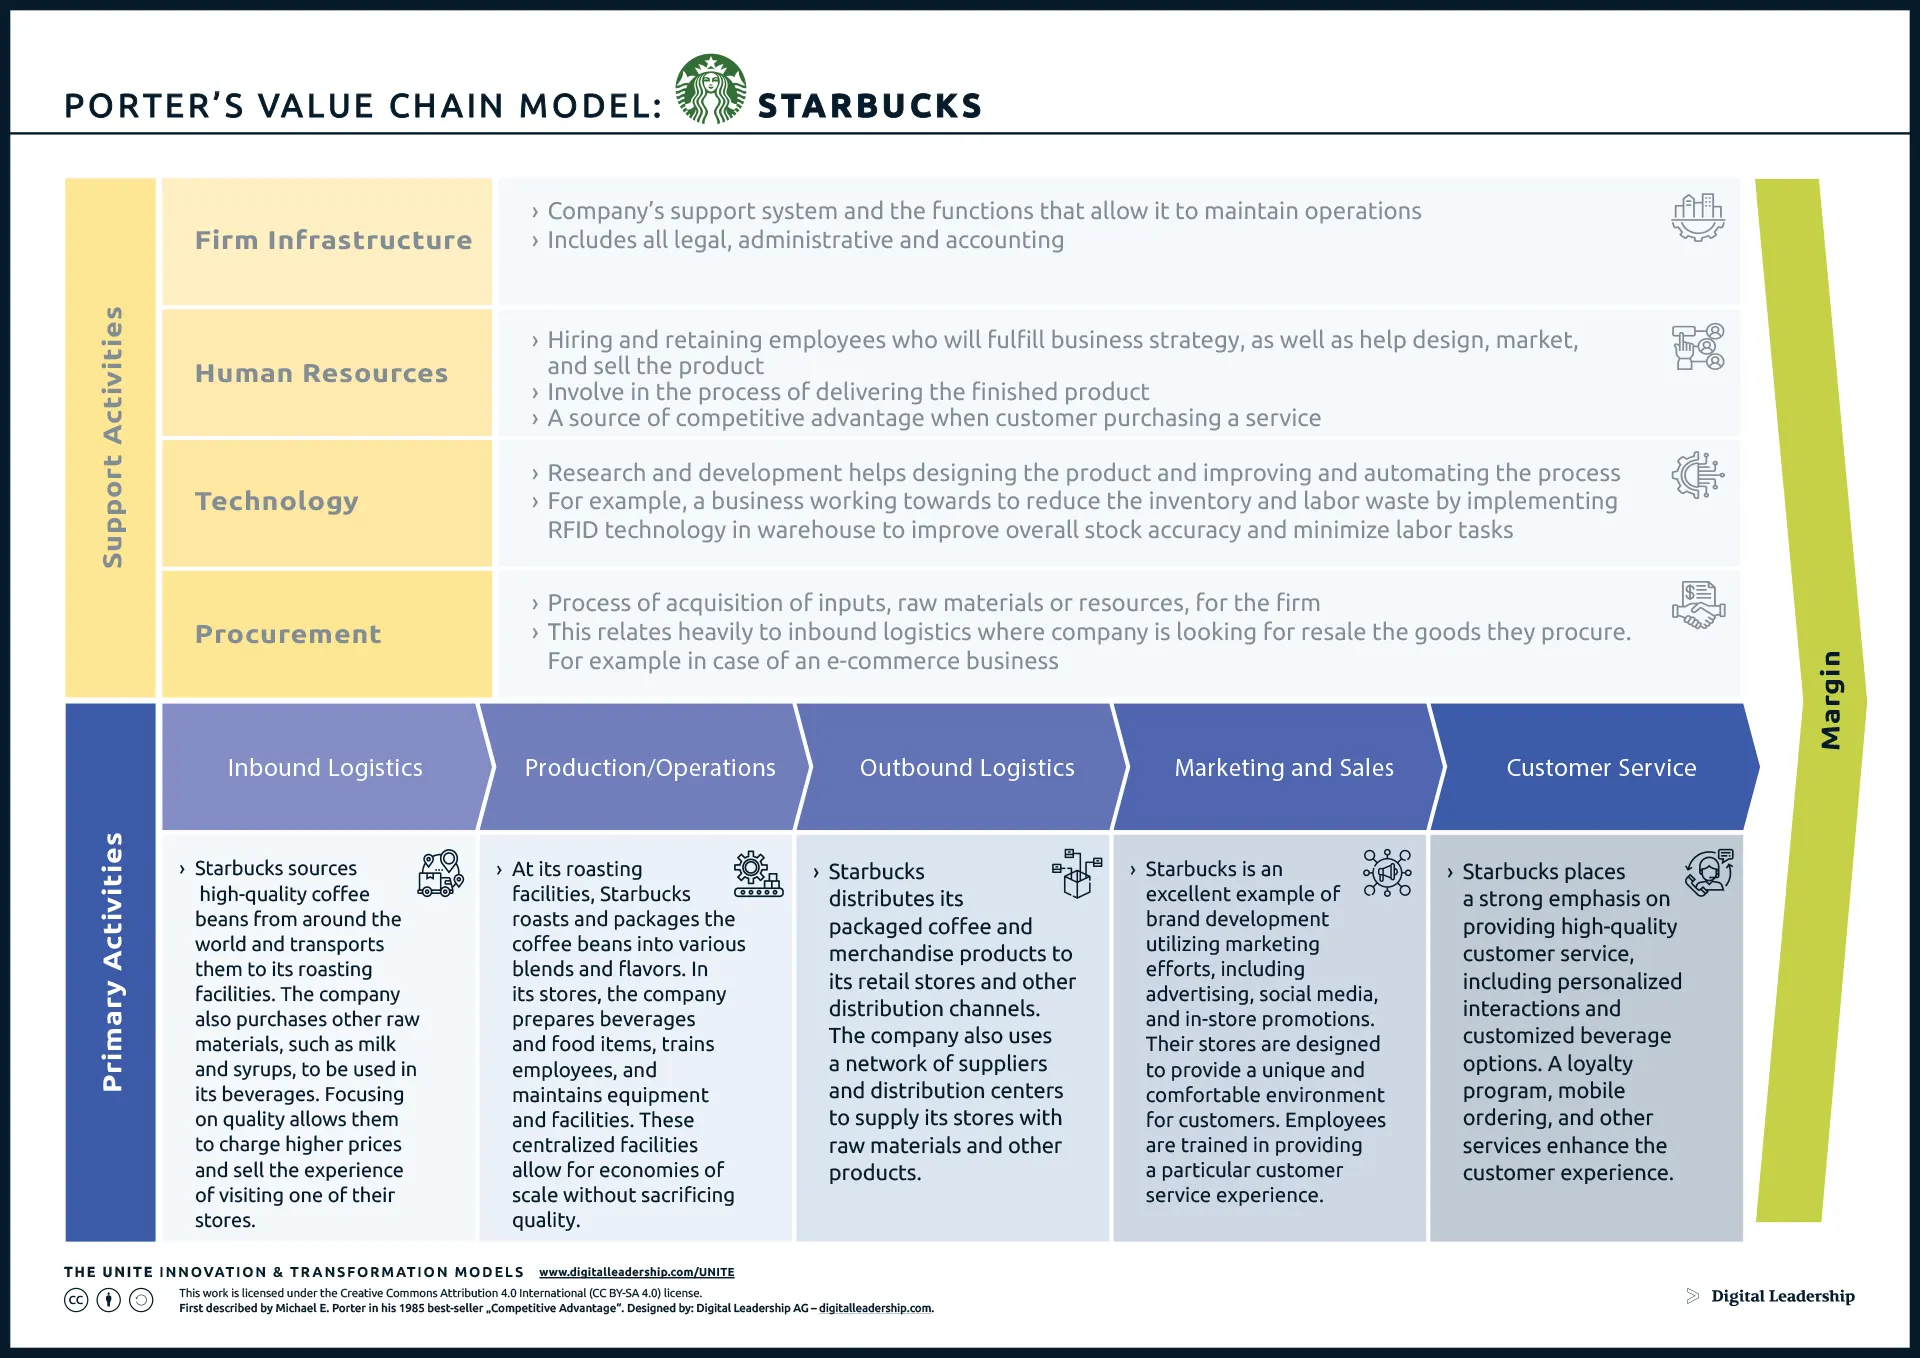 Porter's Value Chain Example - STARBUCKS